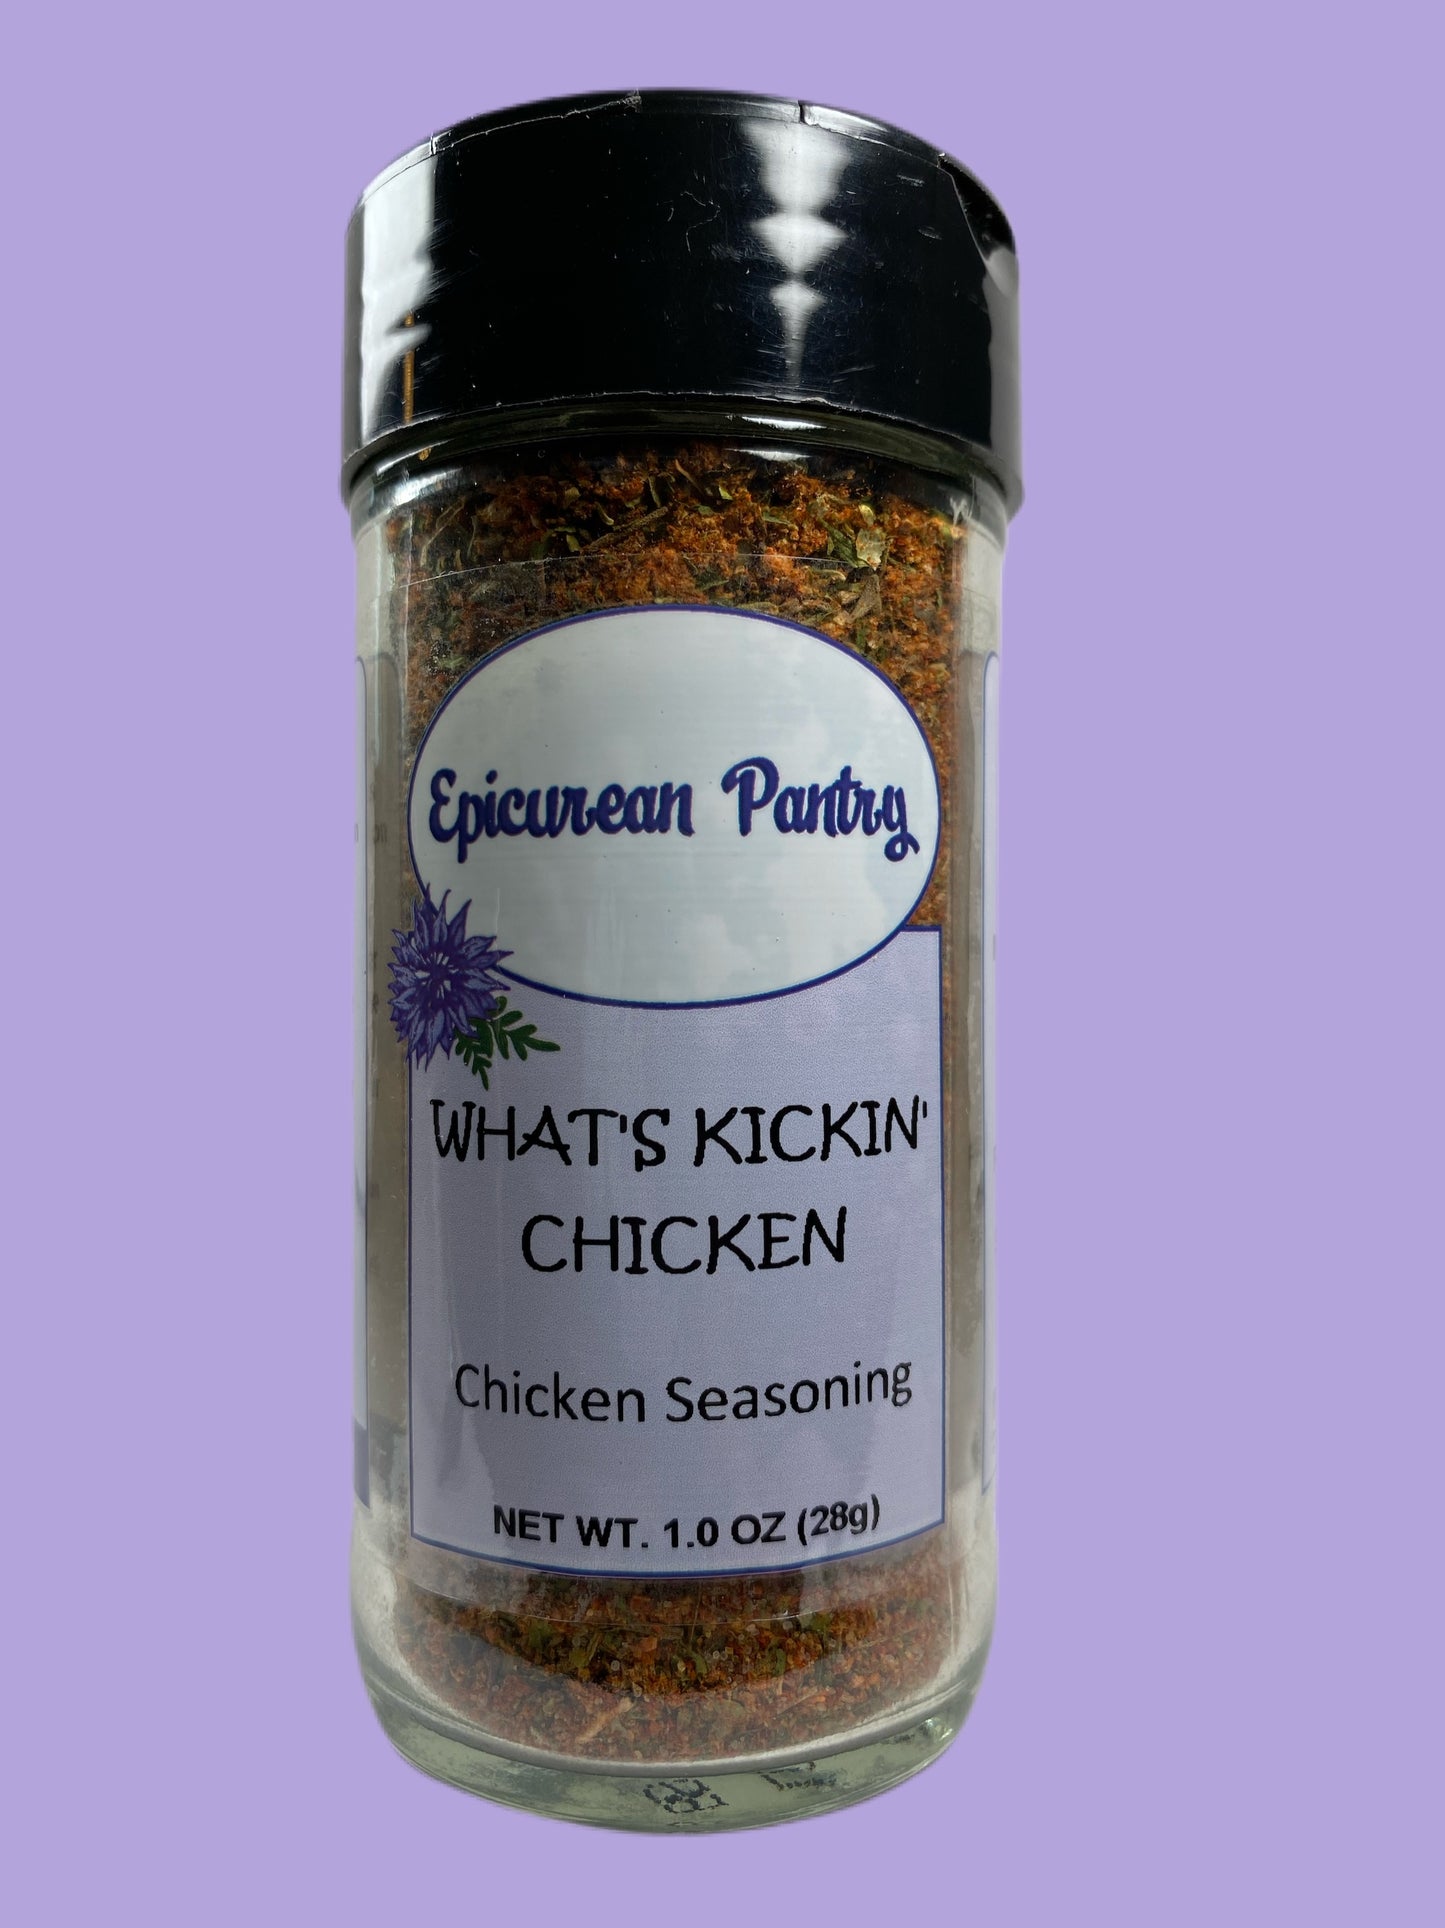 What's Kickin' Chicken - Chicken Seasoning - 1.0 oz net wt